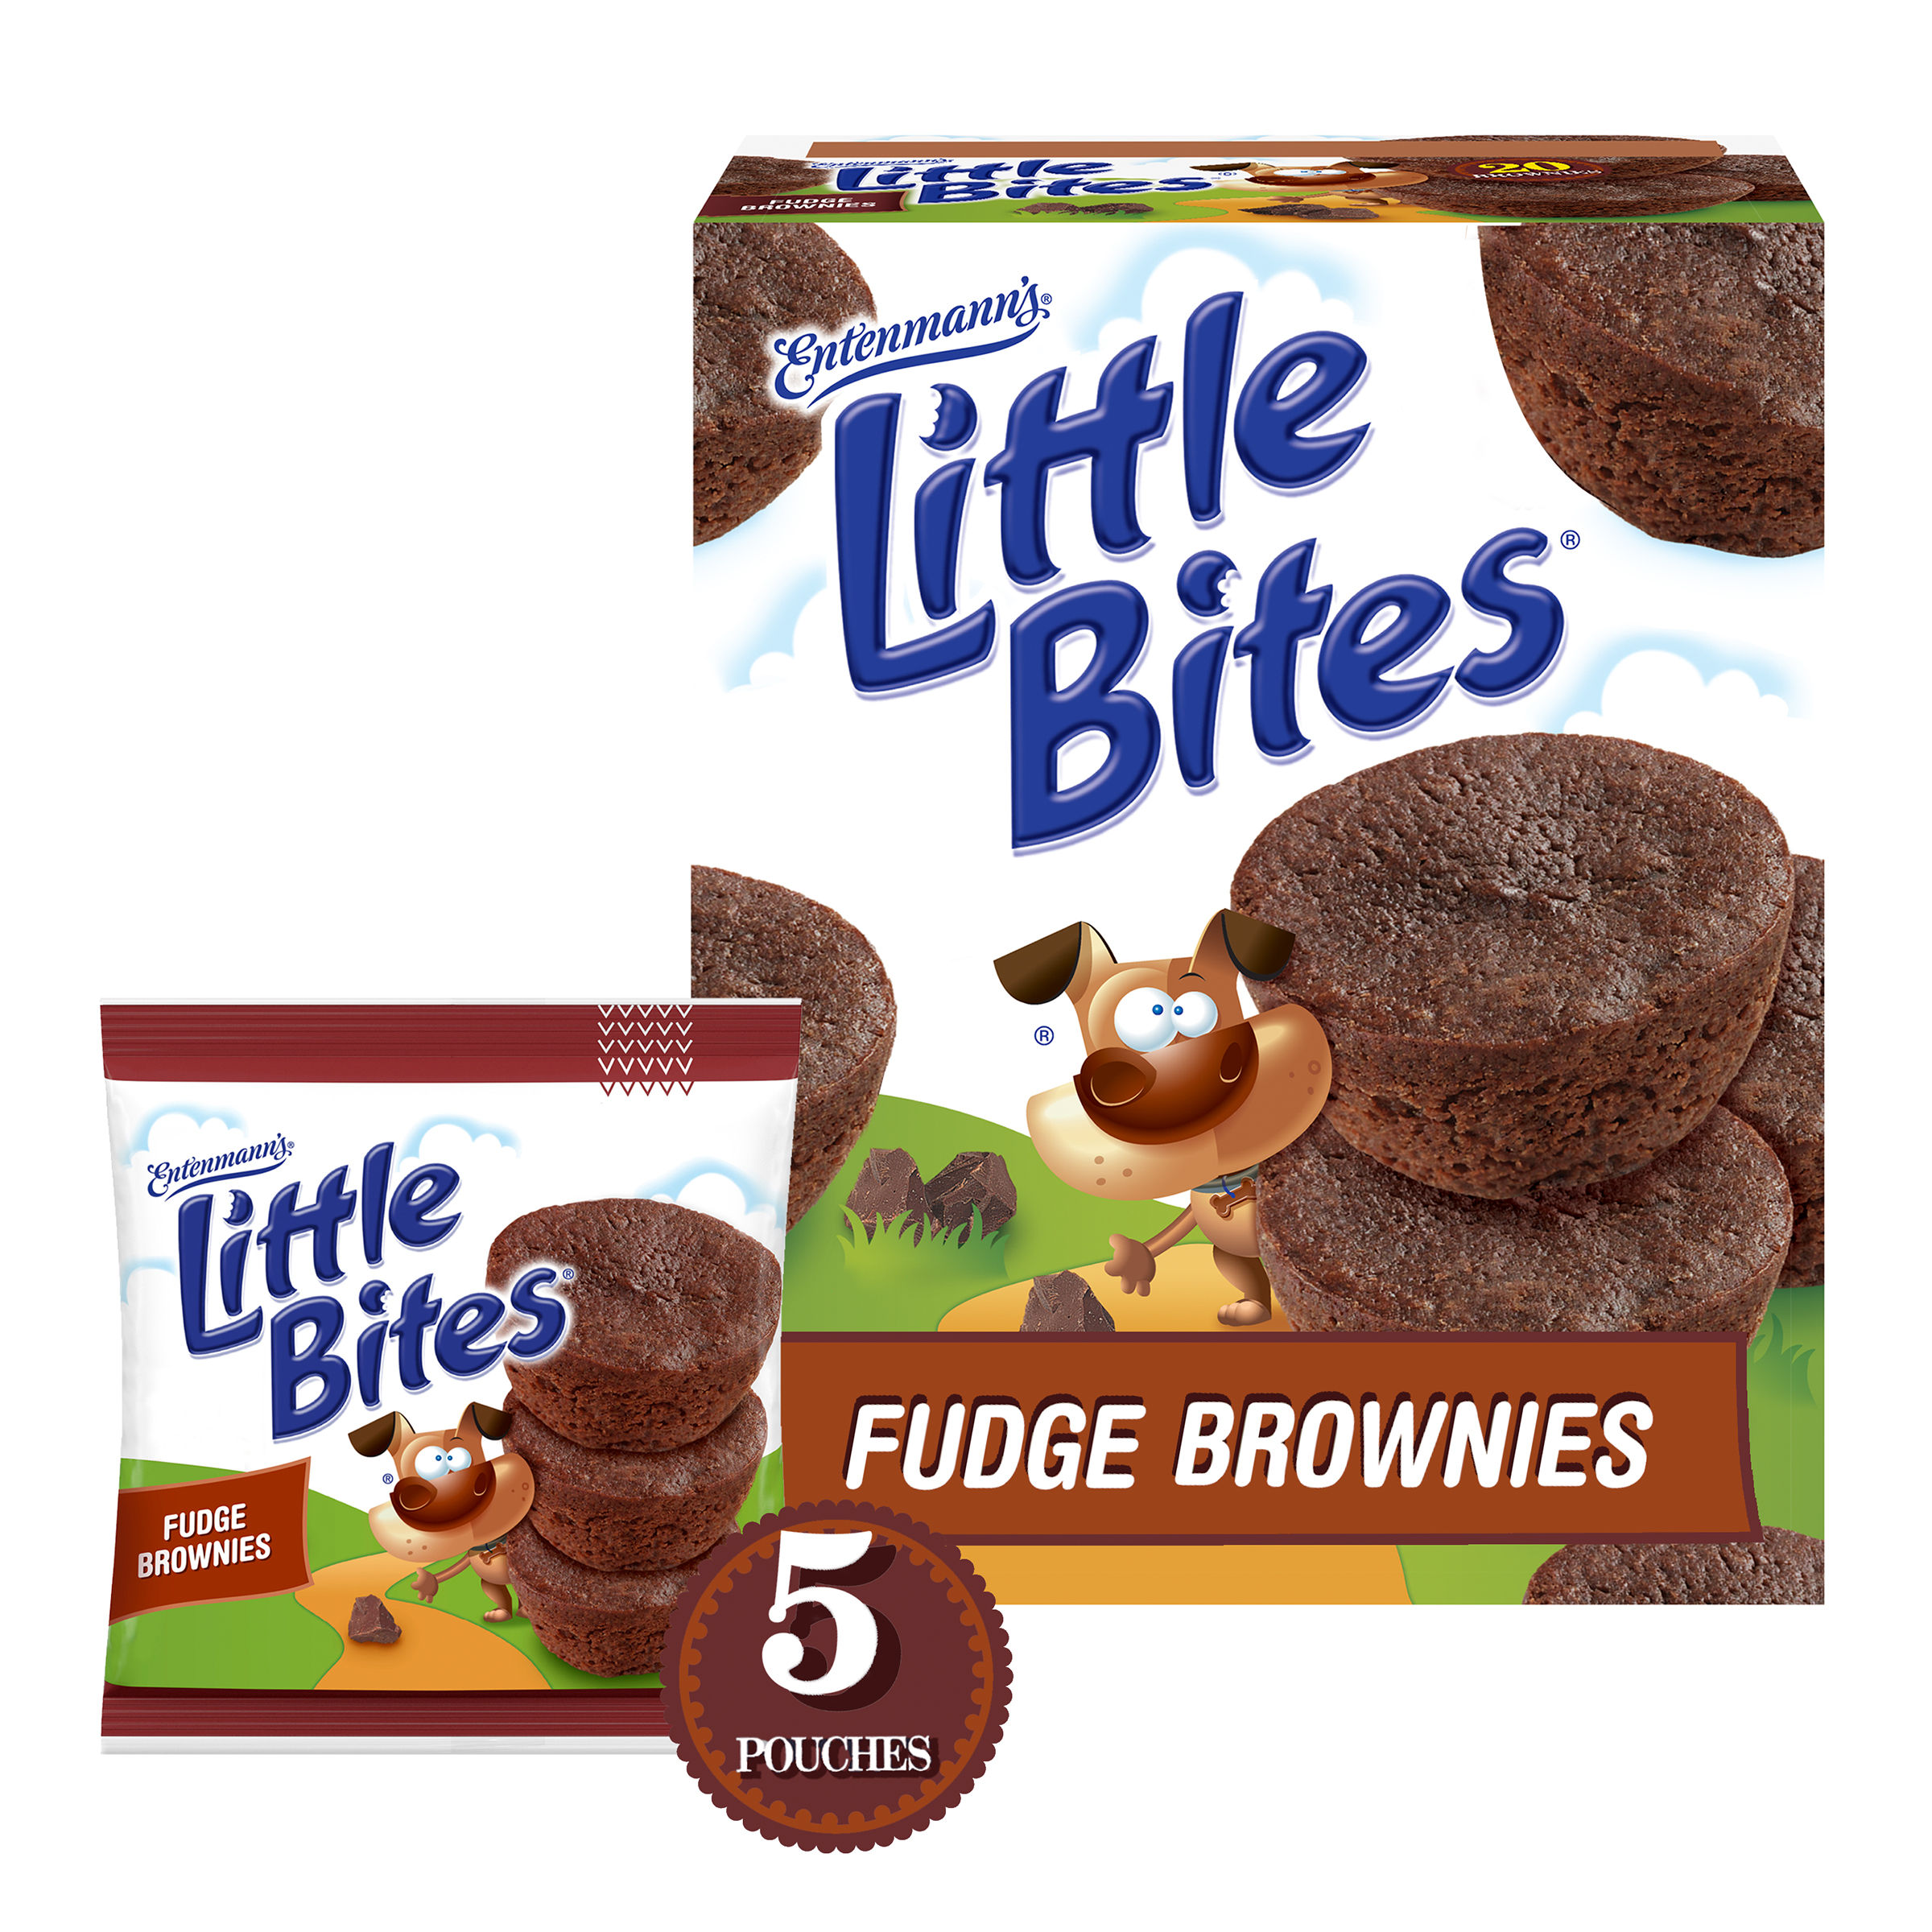 Entenmann’s Little Bites Fudge Brownies, 5 Pouches per Box - image 1 of 19